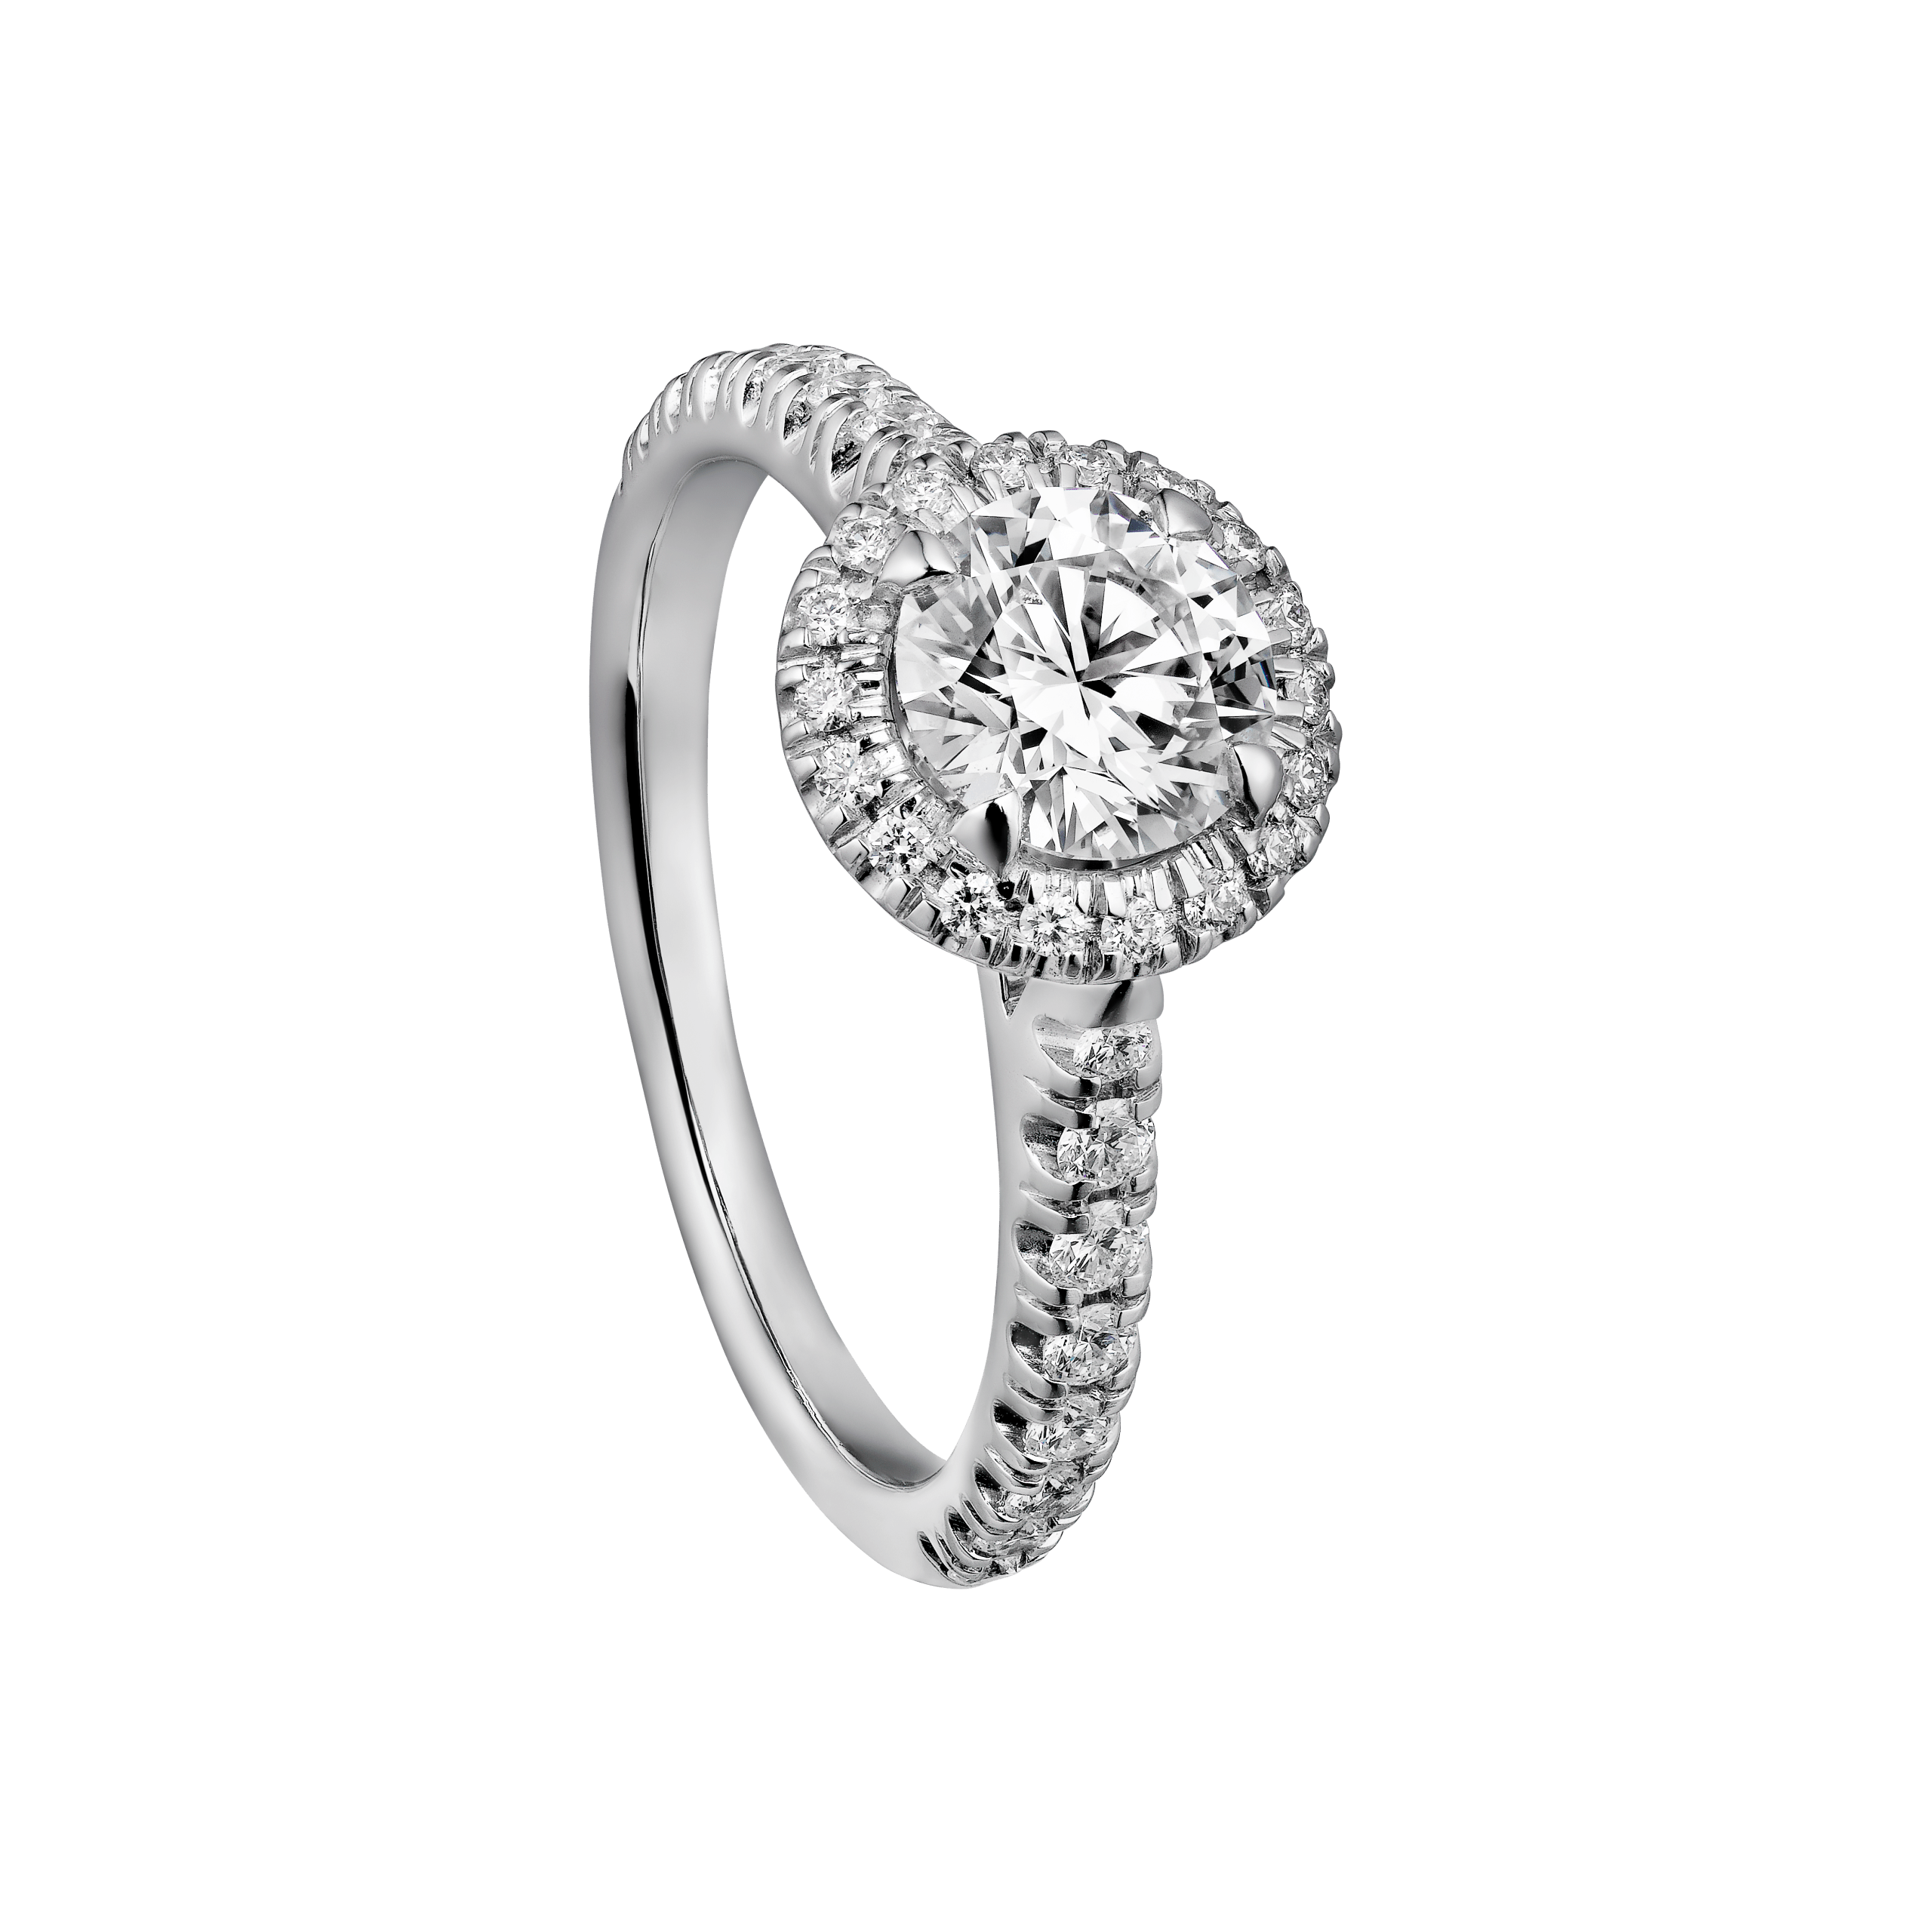 卡地亚destinée系列订婚钻戒, 950‰铂金,钻石(图片来源于品牌)